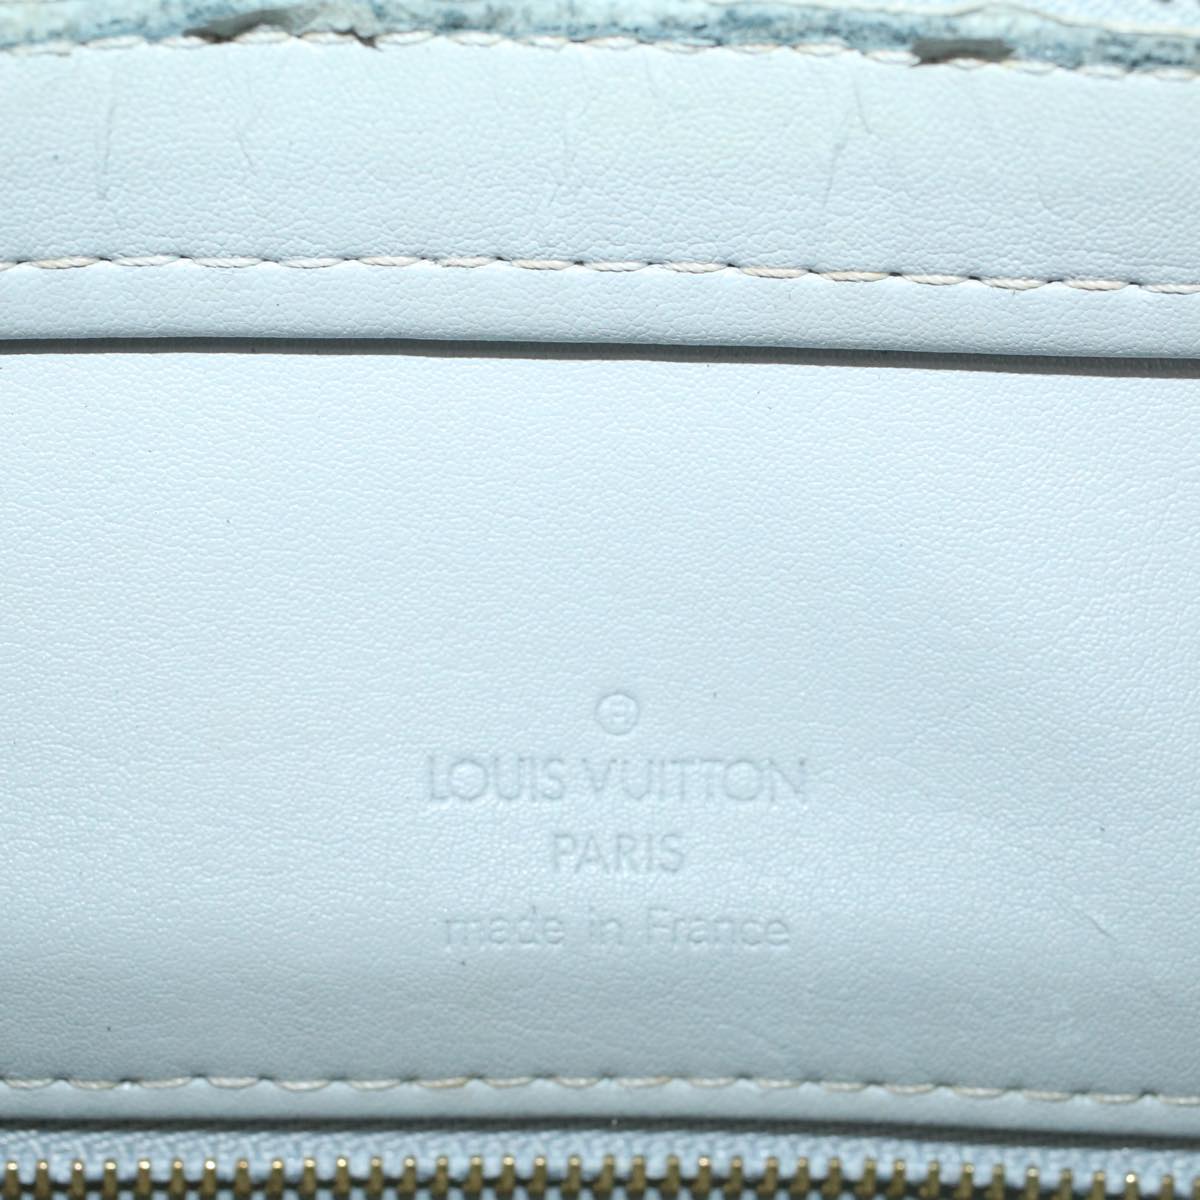 LOUIS VUITTON Monogram Vernis Houston Hand Bag Gris M91053 LV Auth bs7775